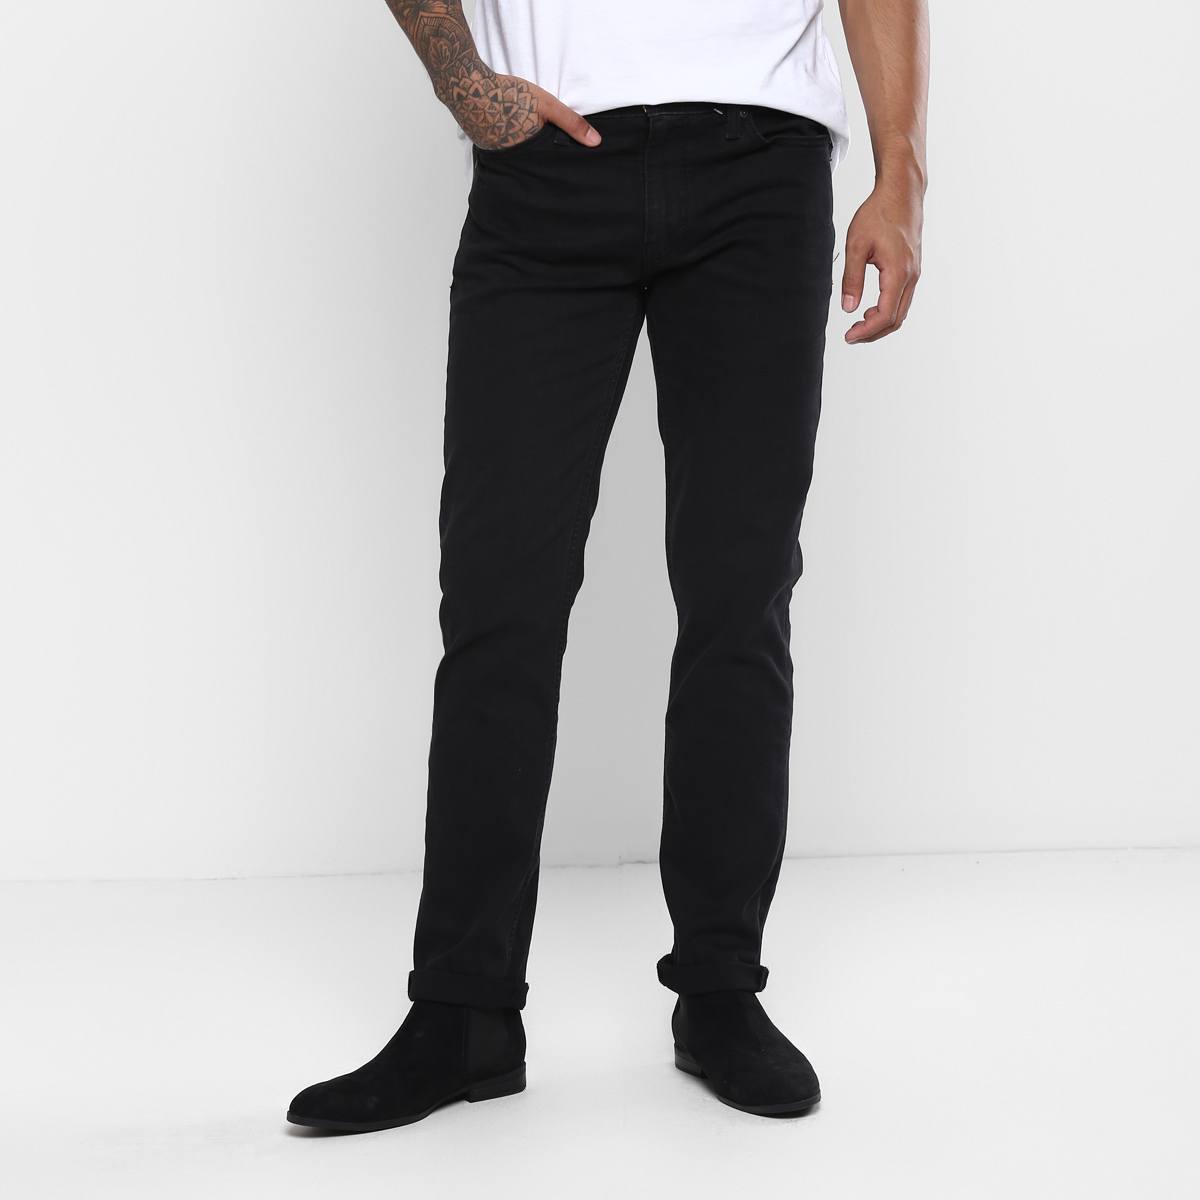 LEVIS MEN Single Length Jeans 86665-0000 Black 30